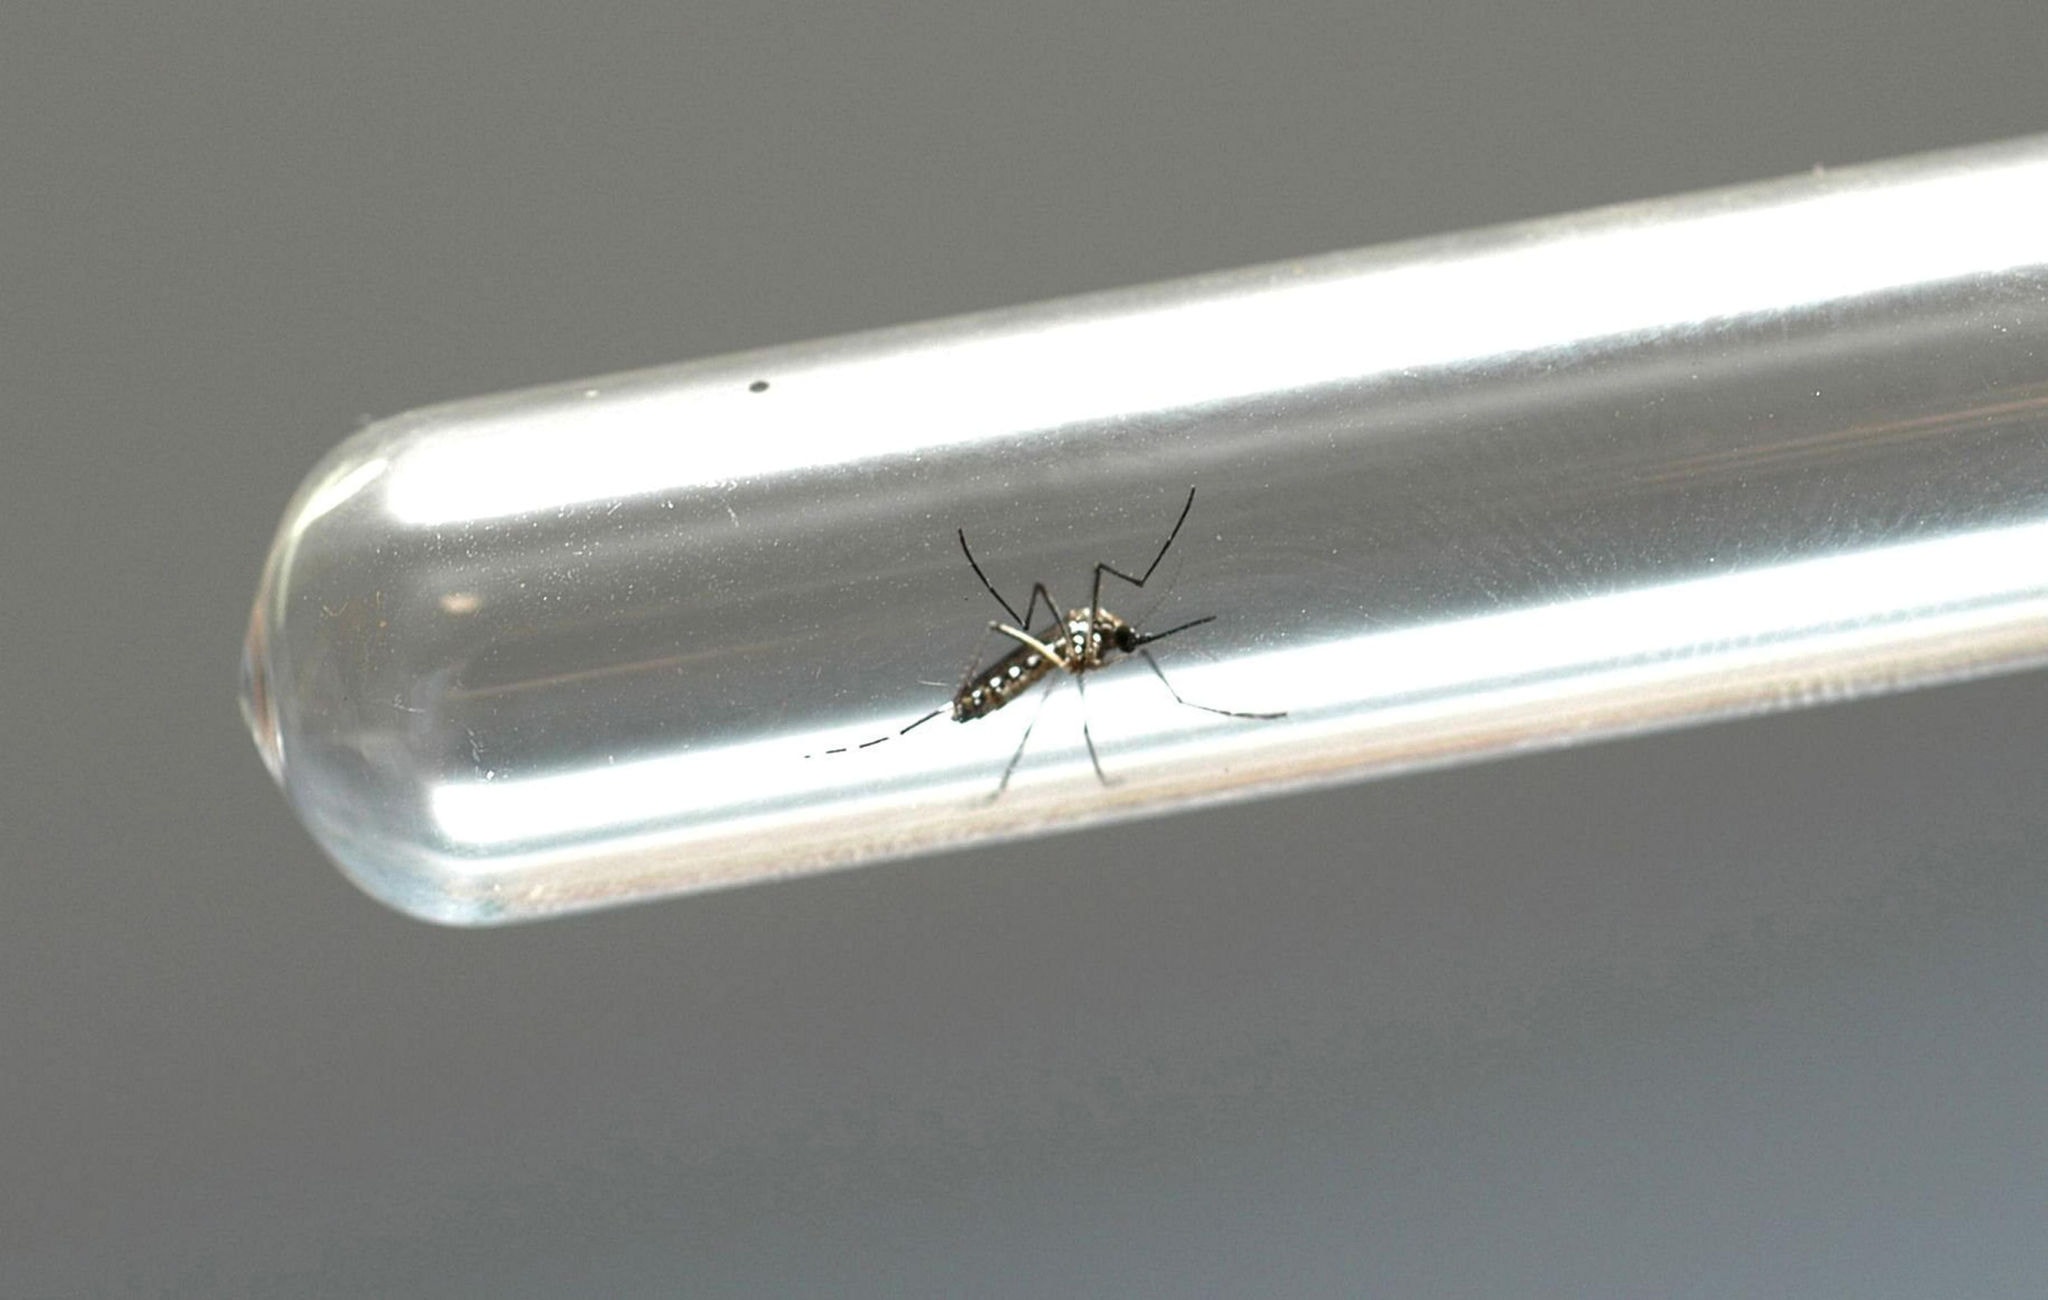 Mosquito infectado com bactéria Wolbachia reduz capacidade de o inseto transmitir a doença, dizem especialistas